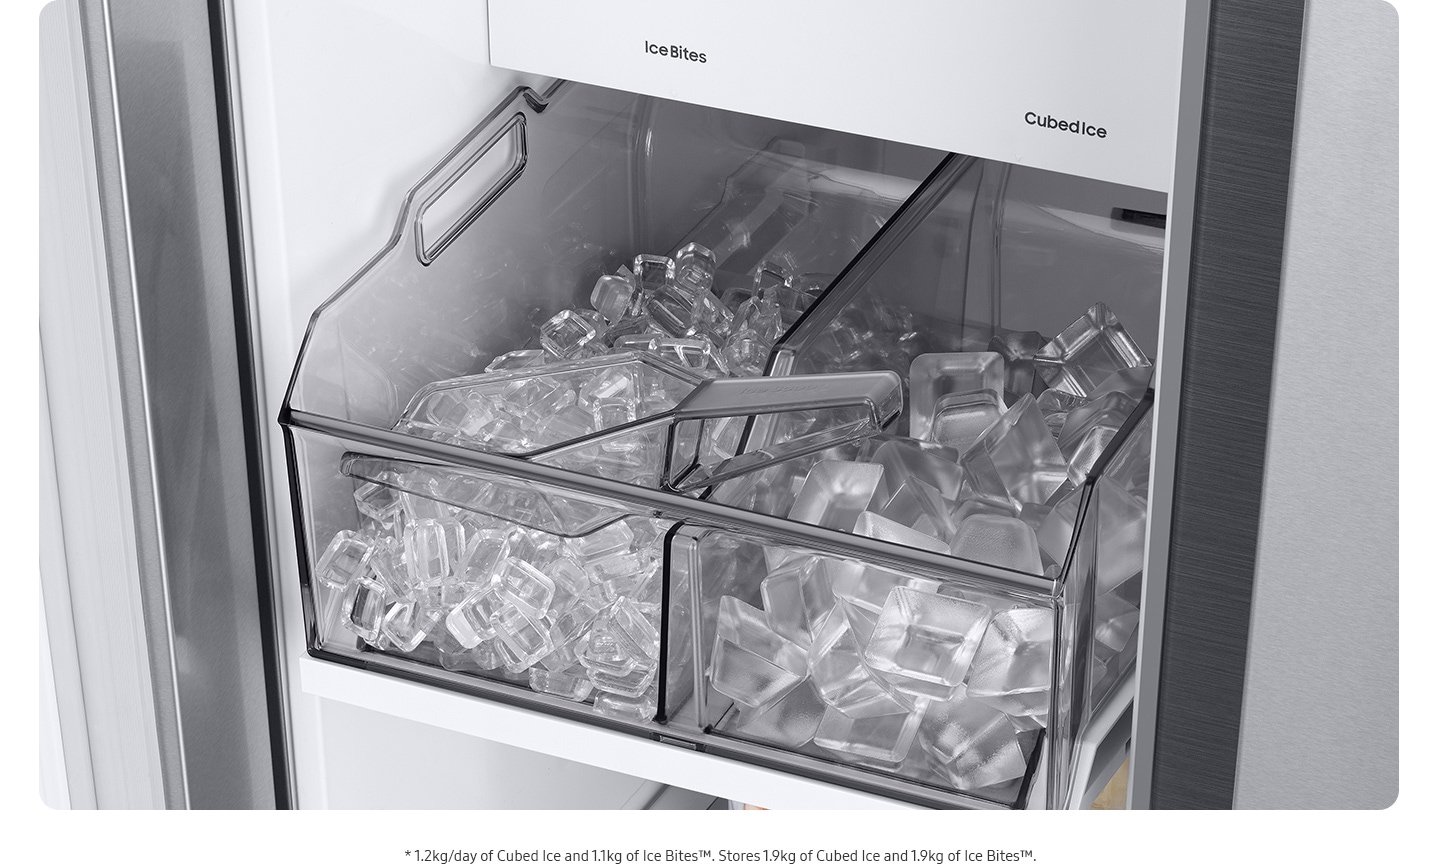 Il doppio vassoio nel congelatore è pieno di ghiaccio. Il vassoio di sinistra è pieno di cubetti di ghiaccio grandi e il vassoio di destra è pieno di cubetti di ghiaccio piccoli.